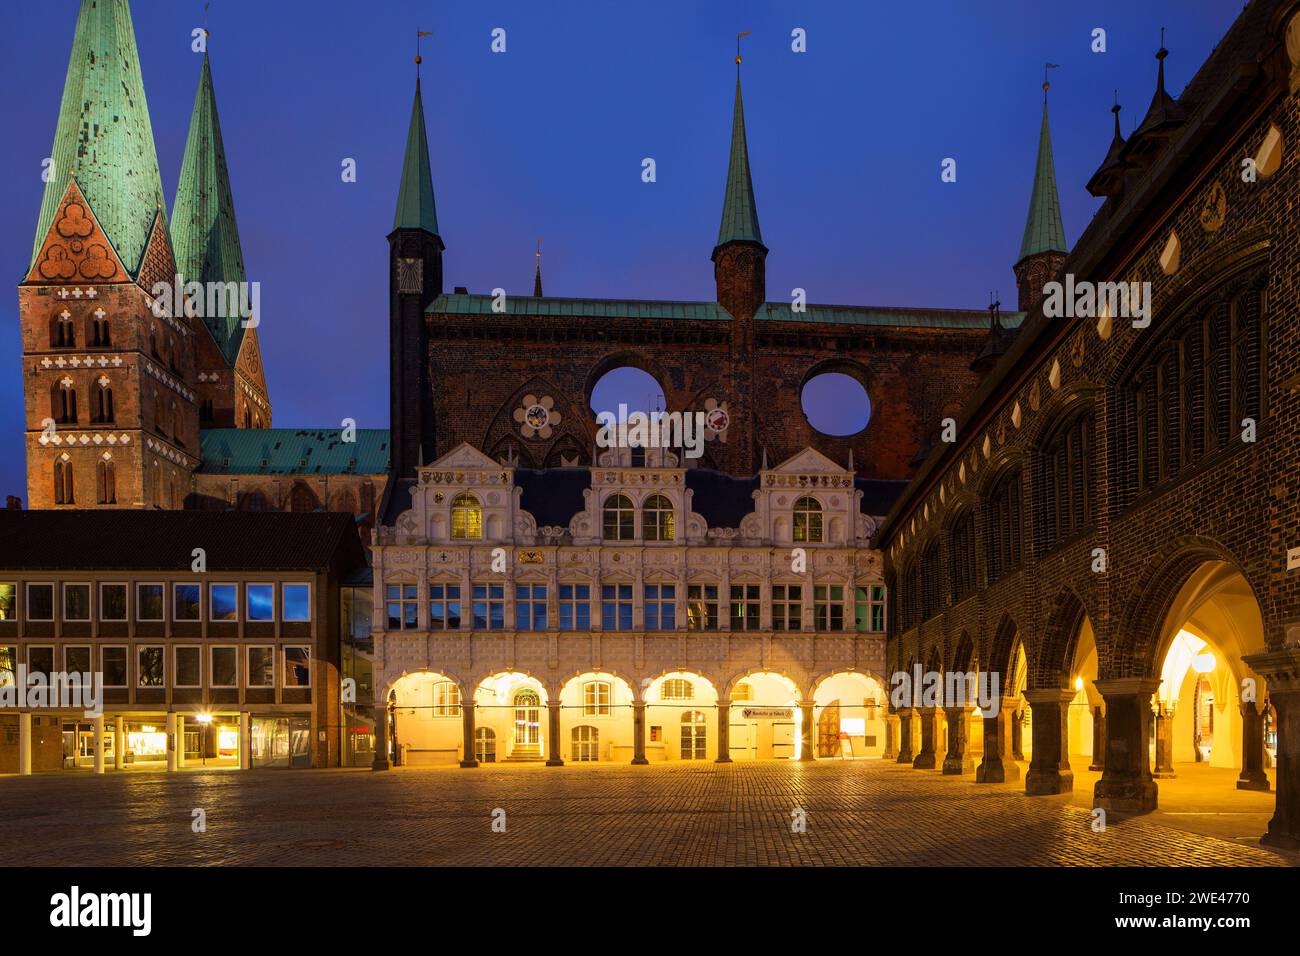 Hôtel de ville / mairie en brique gothique et marché illuminé la nuit dans la ville hanséatique de Lübeck / Luebeck, Schleswig-Holstein, Allemagne Banque D'Images